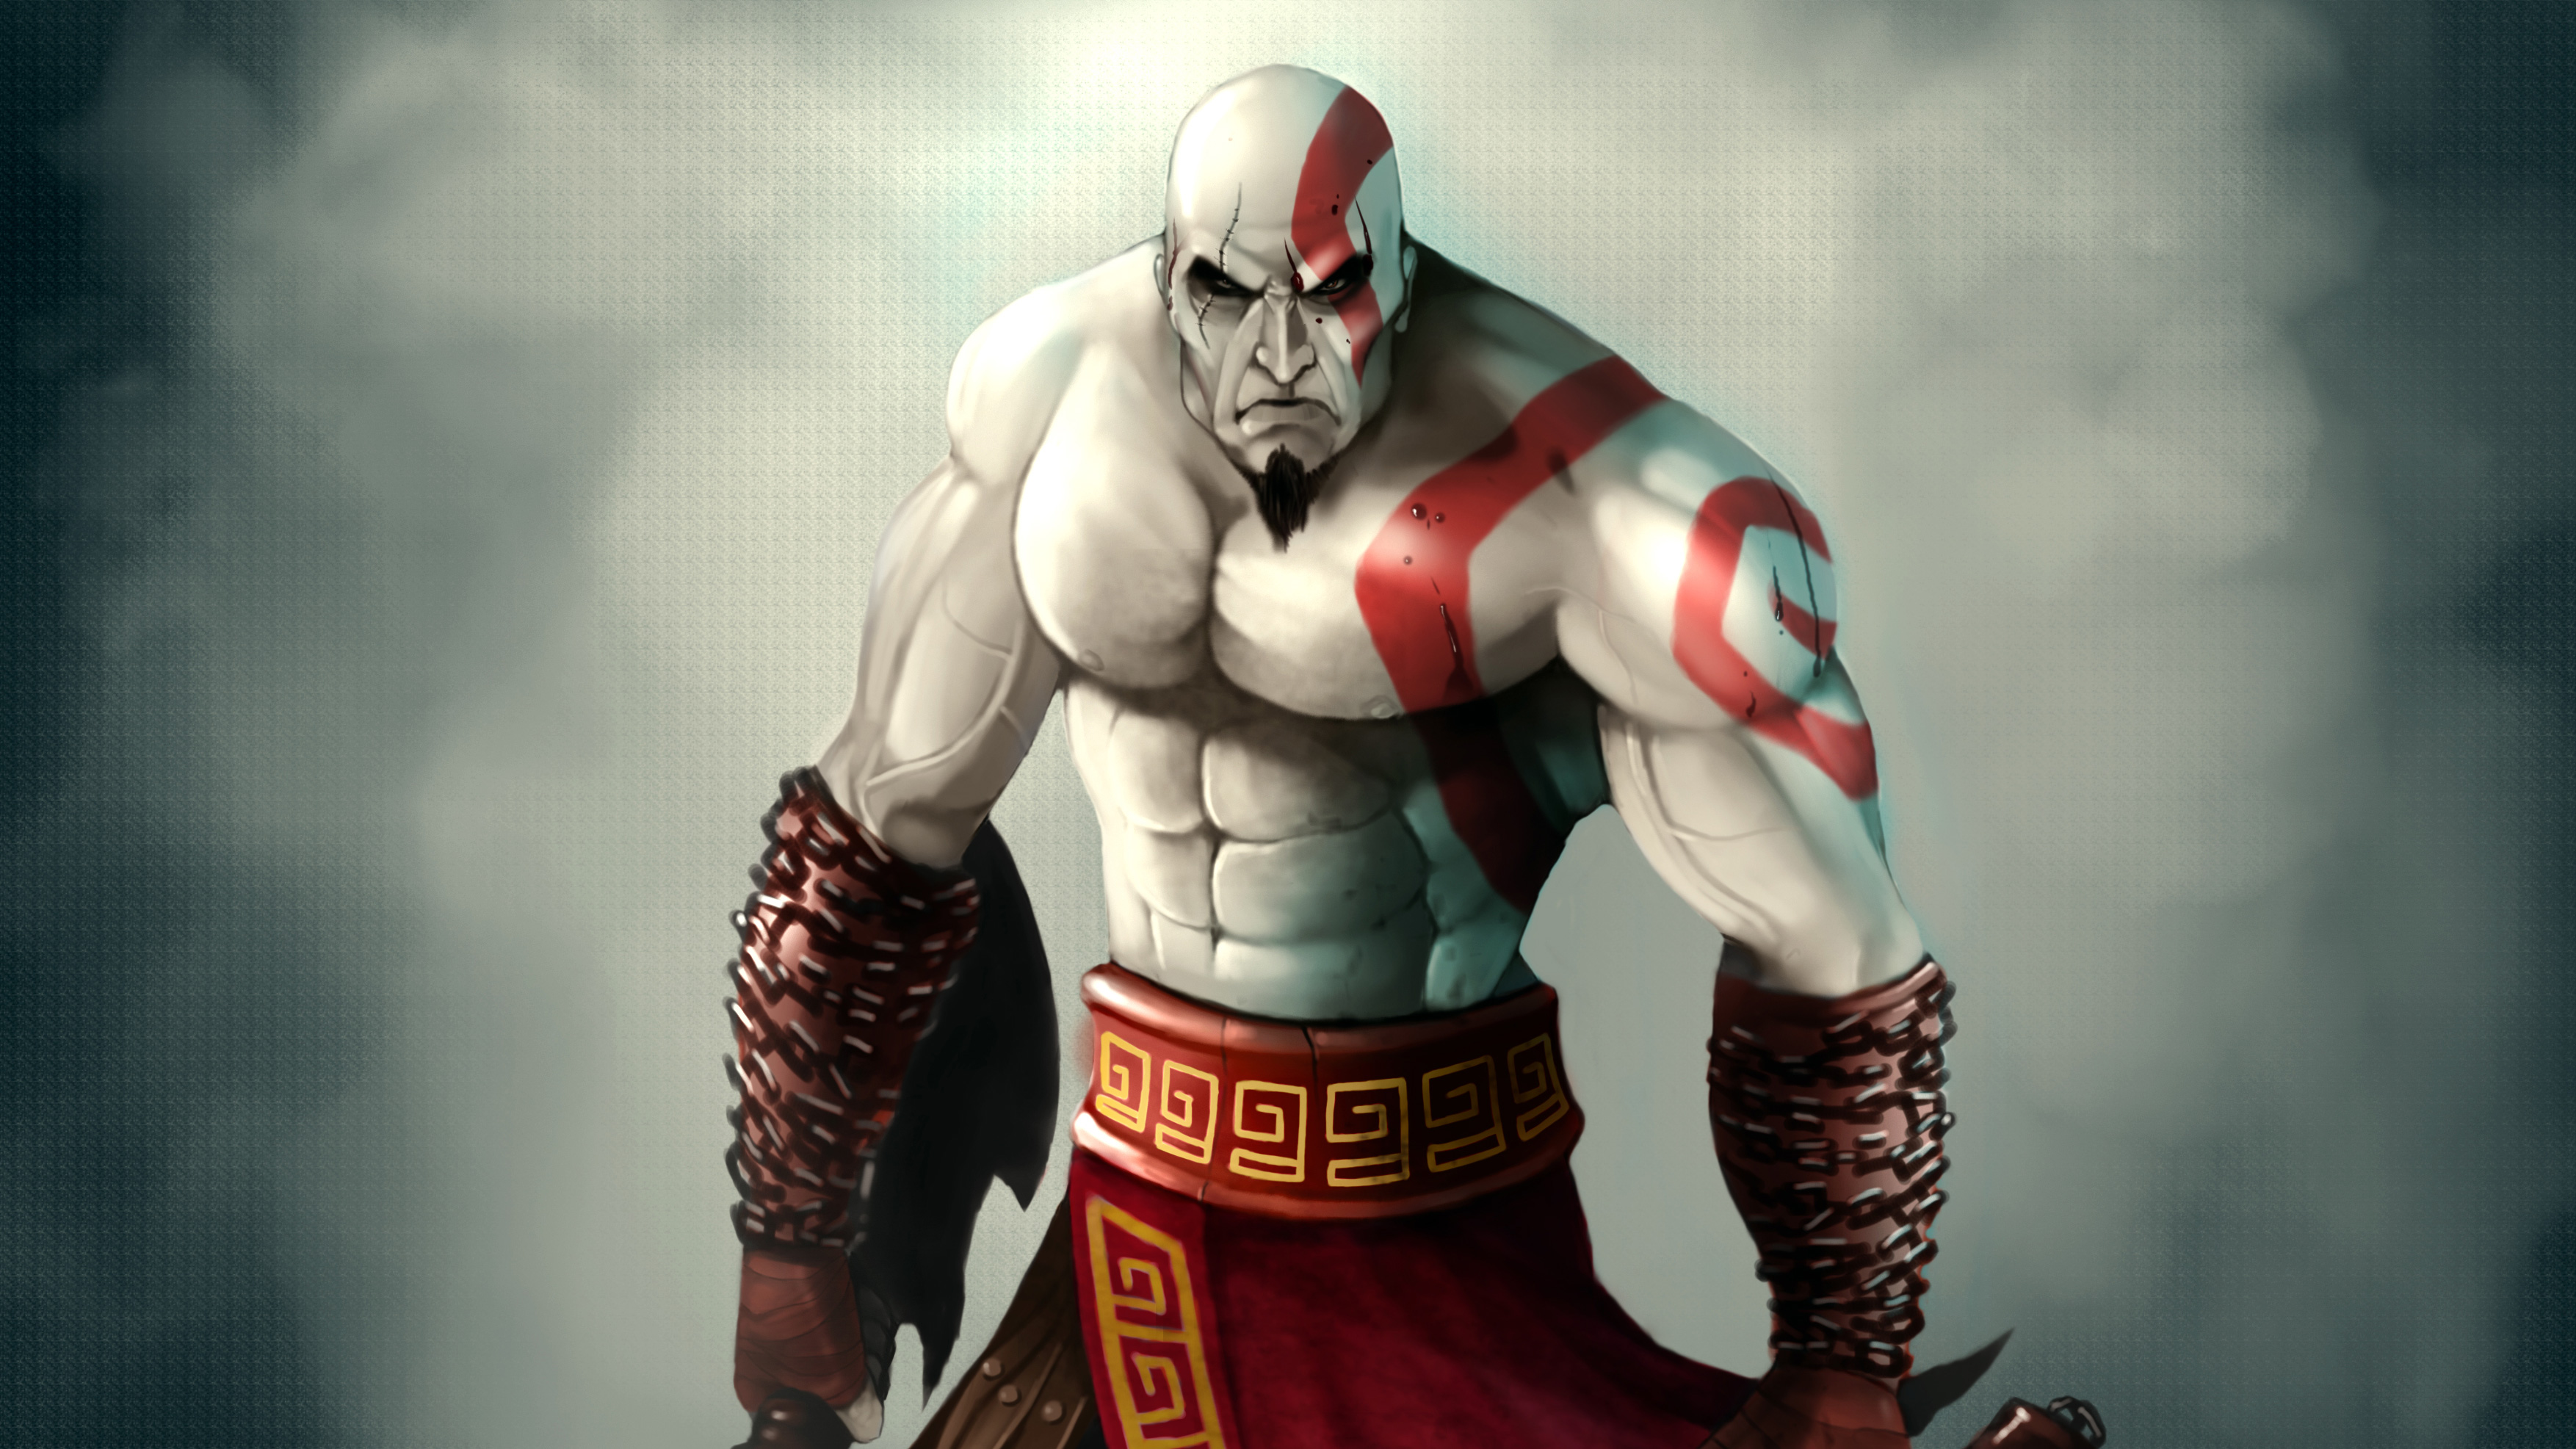 Kratos 10K Vector Art Wallpapers.